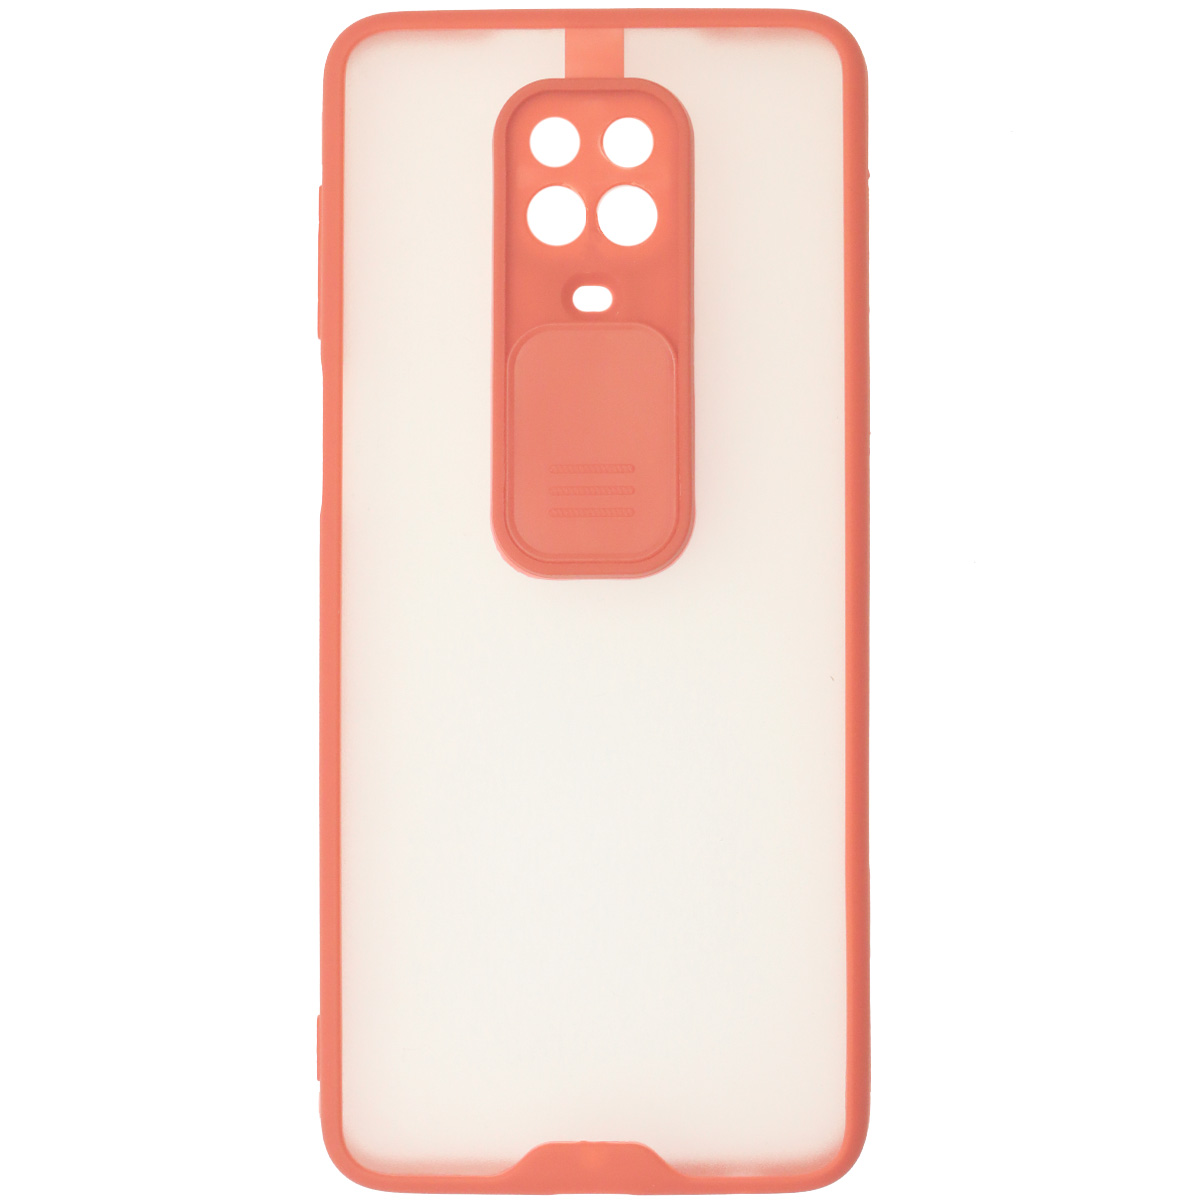 Чехол накладка LIFE TIME для XIAOMI Redmi Note 9 Pro, Redmi Note 9S, силикон, пластик, матовый, со шторкой для защиты задней камеры, цвет окантовки розовый